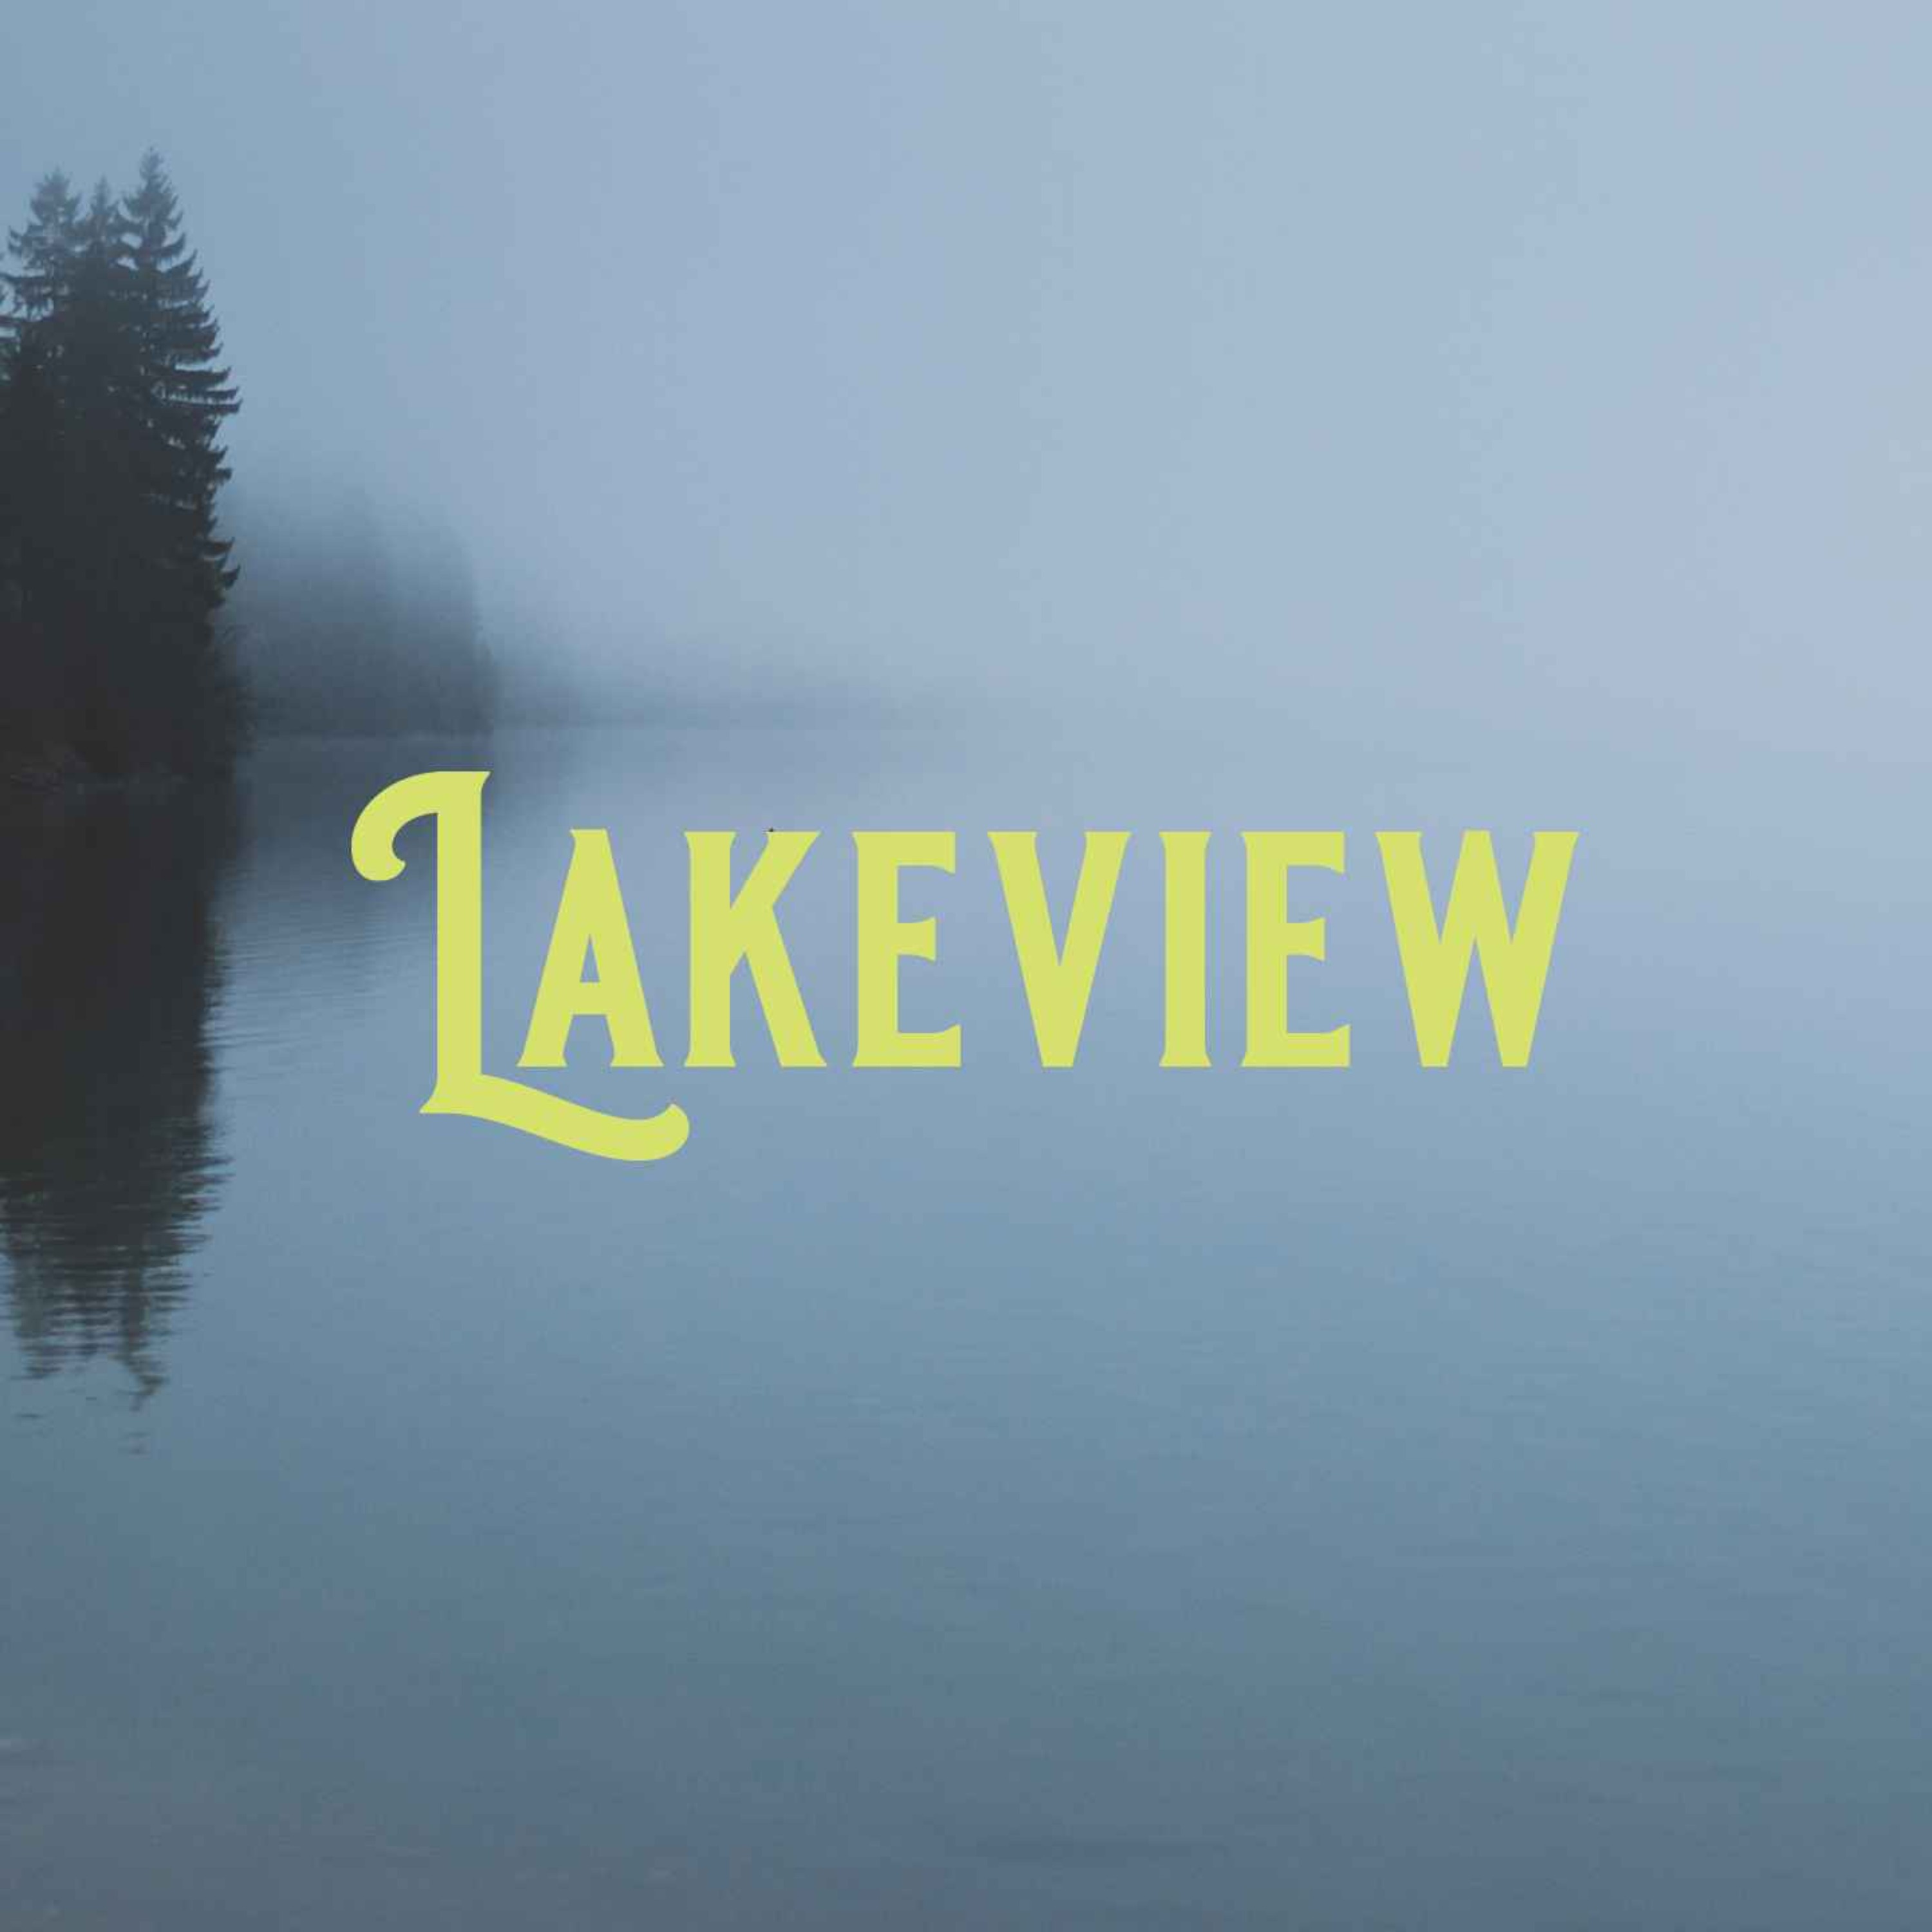 Lakeview (AP) 2/3 - Escape